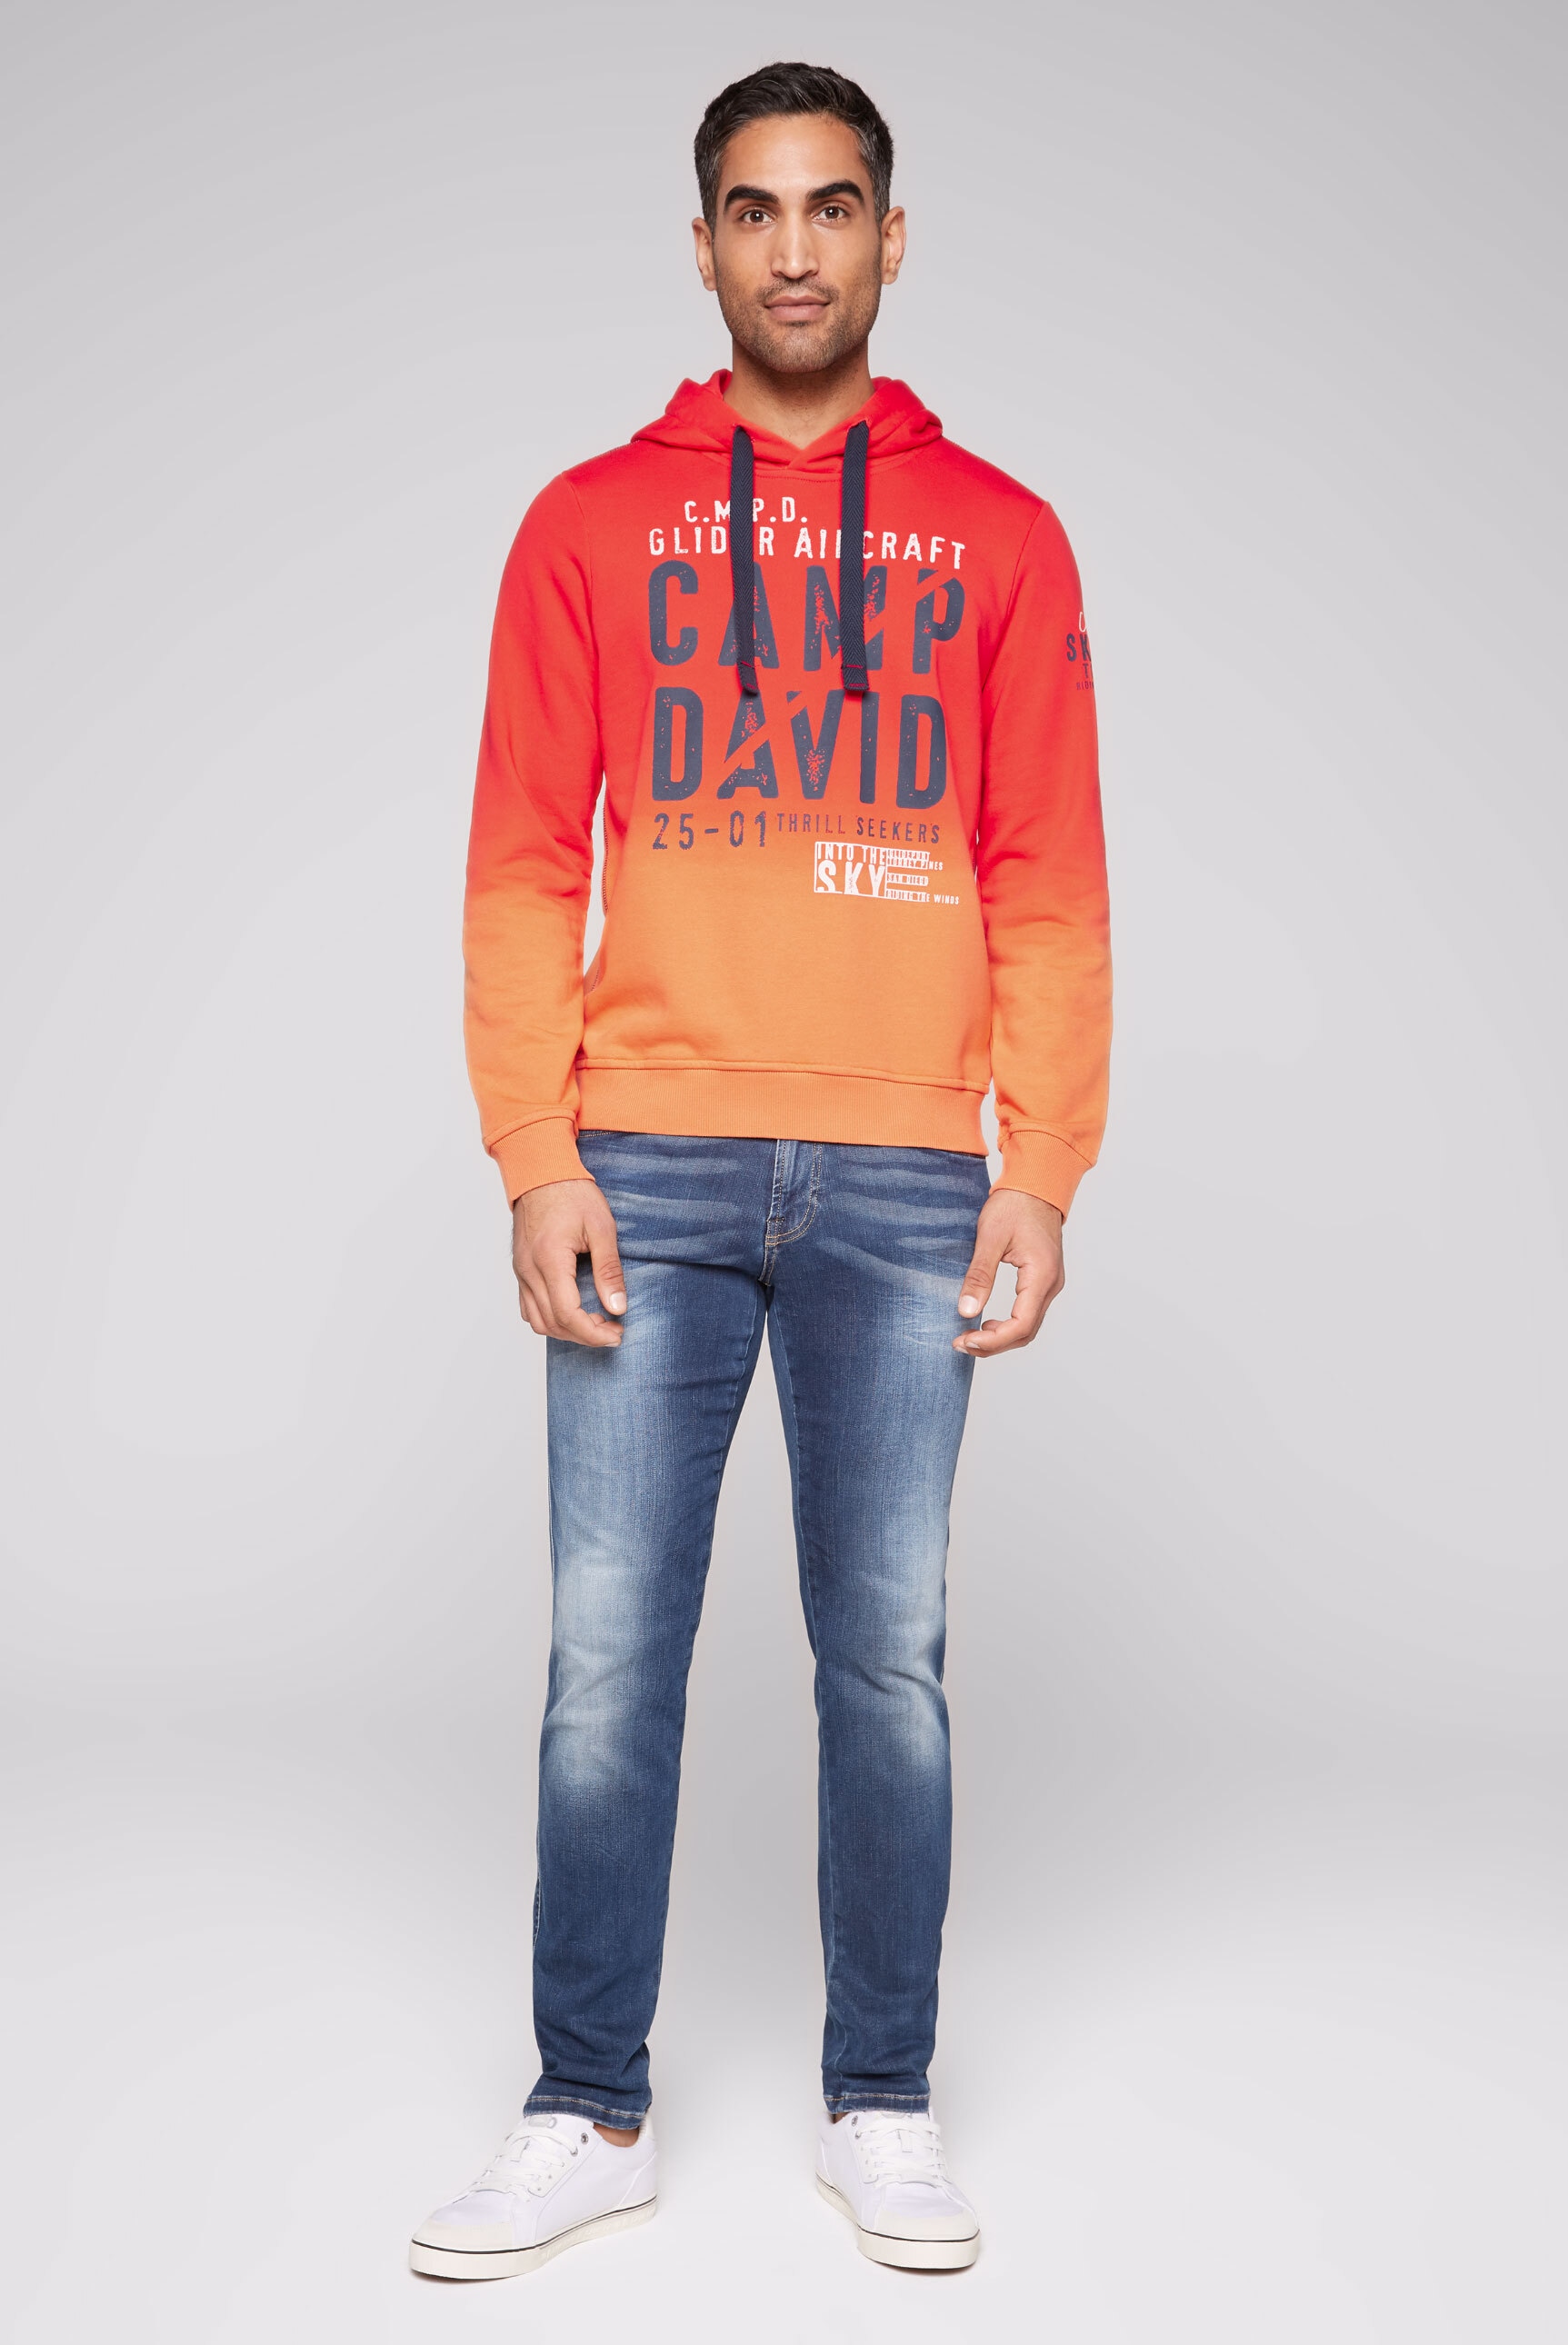 mit DAVID Farbverlauf Kapuzensweatshirt, CAMP online kaufen